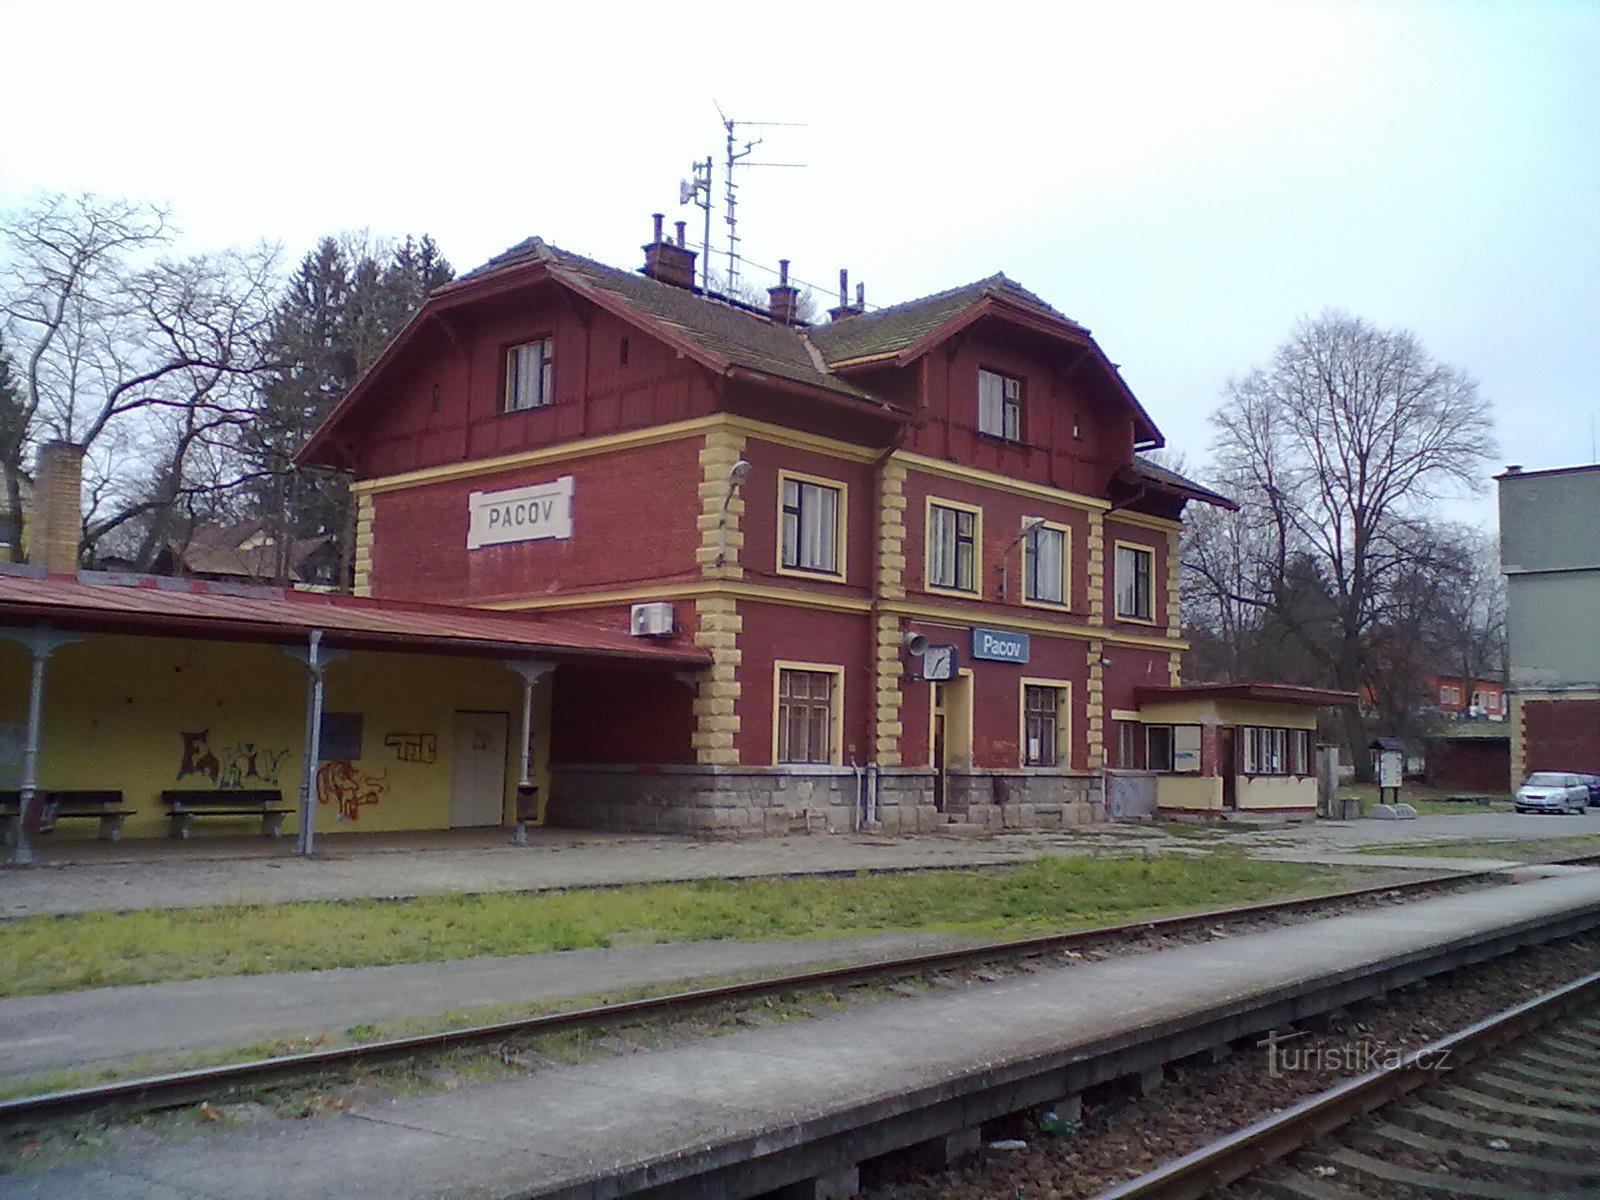 2. Järnvägsstation i Pacov, början och slutet av vår vandring.